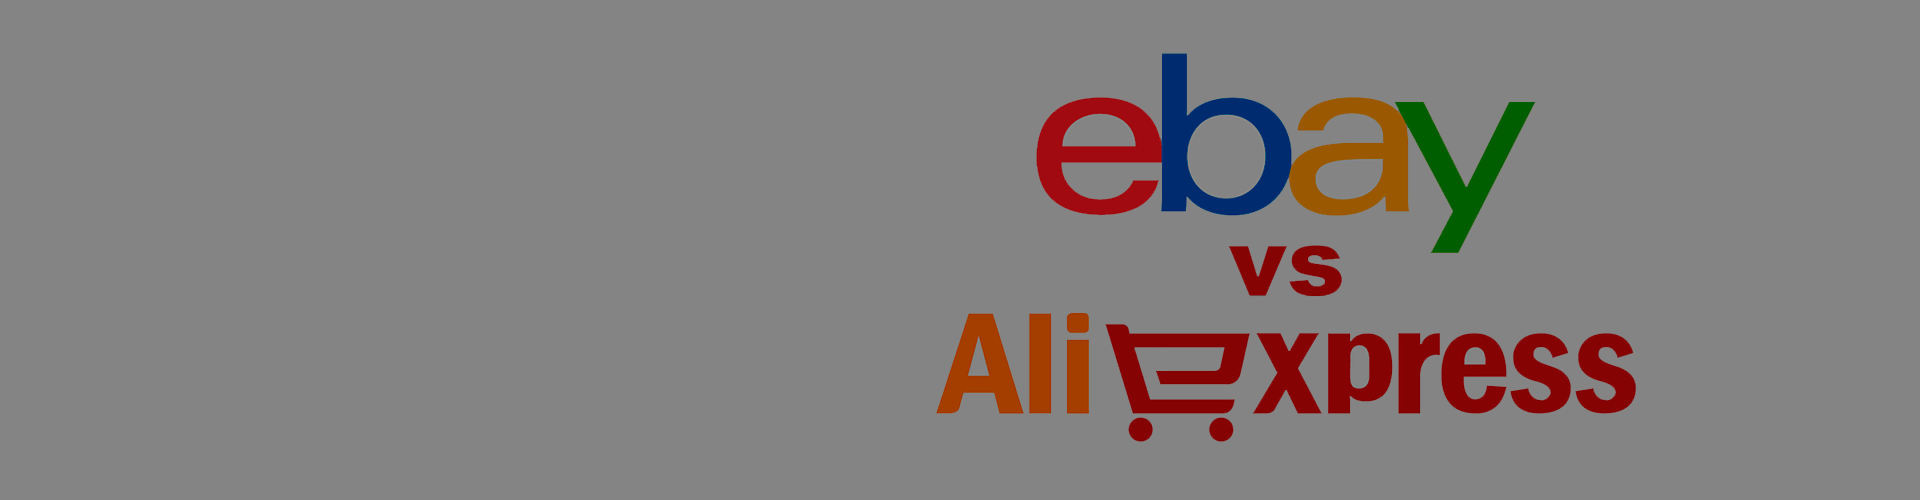 Что лучше ebay или aliexpress